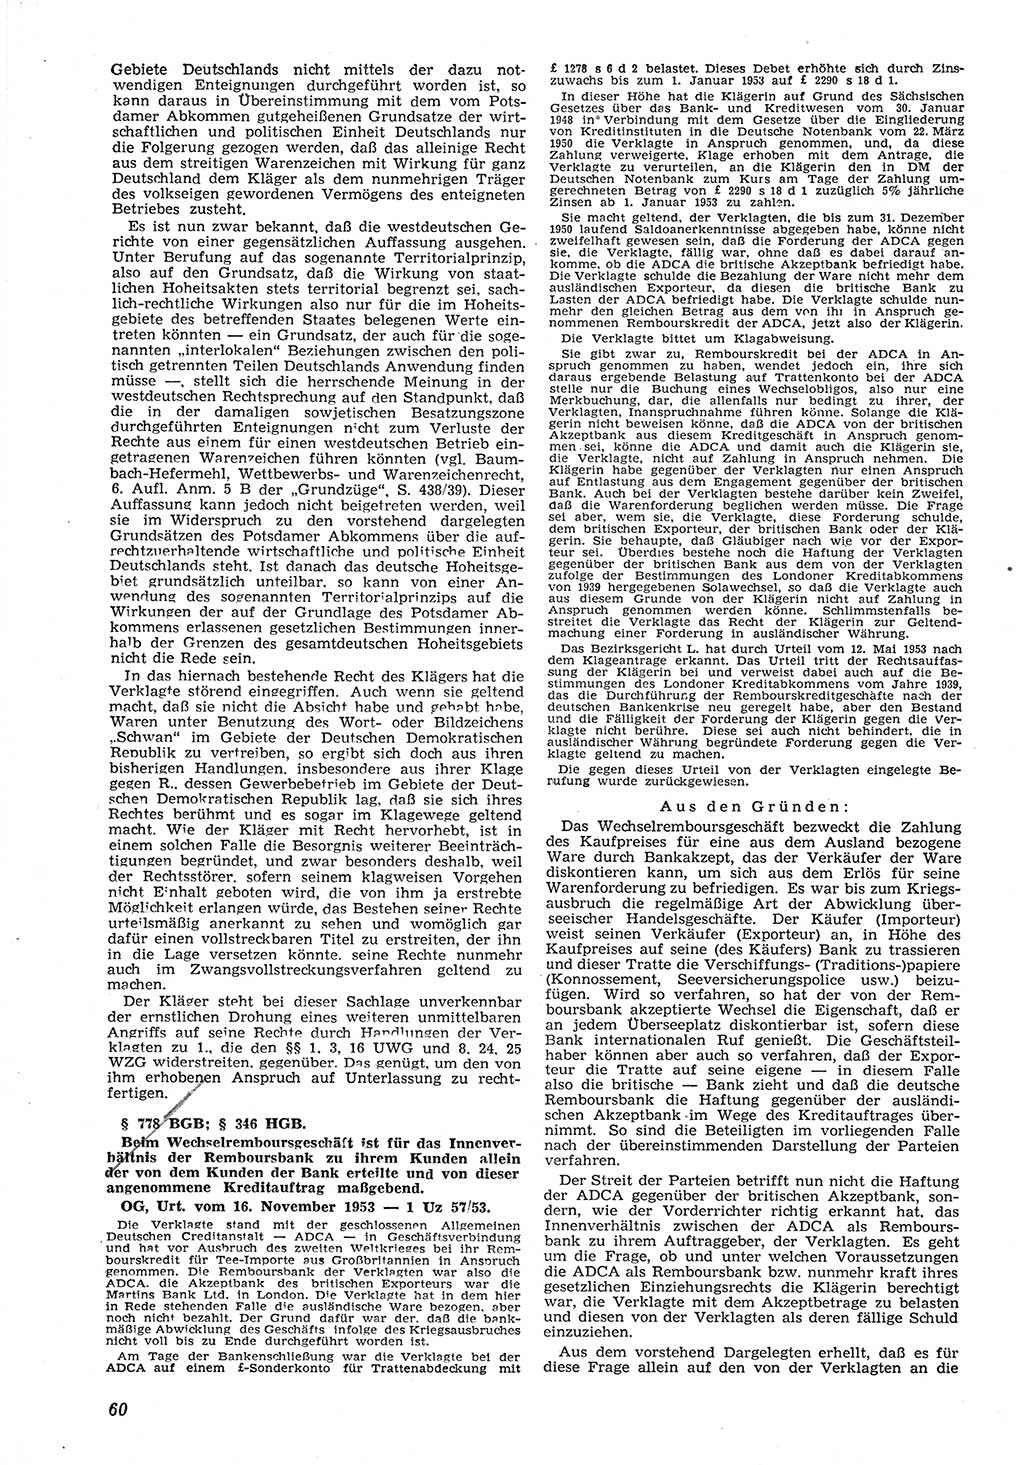 Neue Justiz (NJ), Zeitschrift für Recht und Rechtswissenschaft [Deutsche Demokratische Republik (DDR)], 8. Jahrgang 1954, Seite 60 (NJ DDR 1954, S. 60)